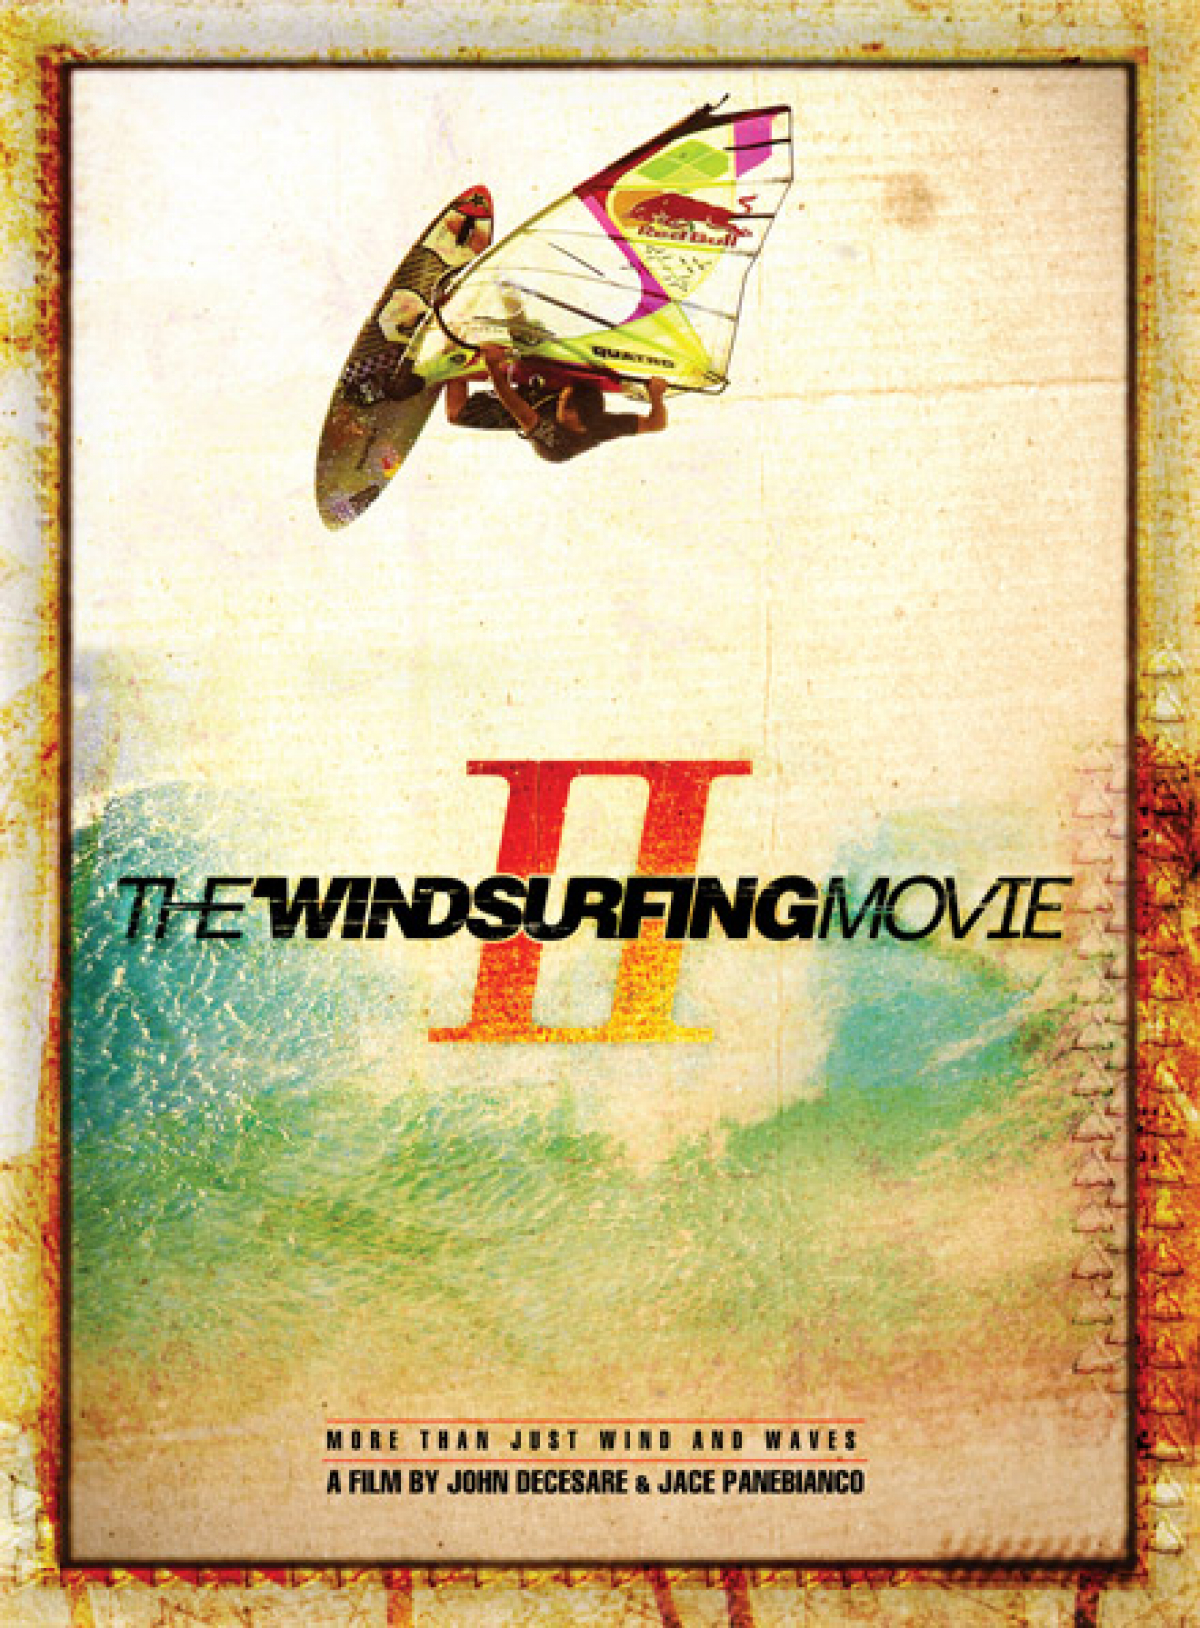 Die Fortsetzung - The Windsurfing Movie 2